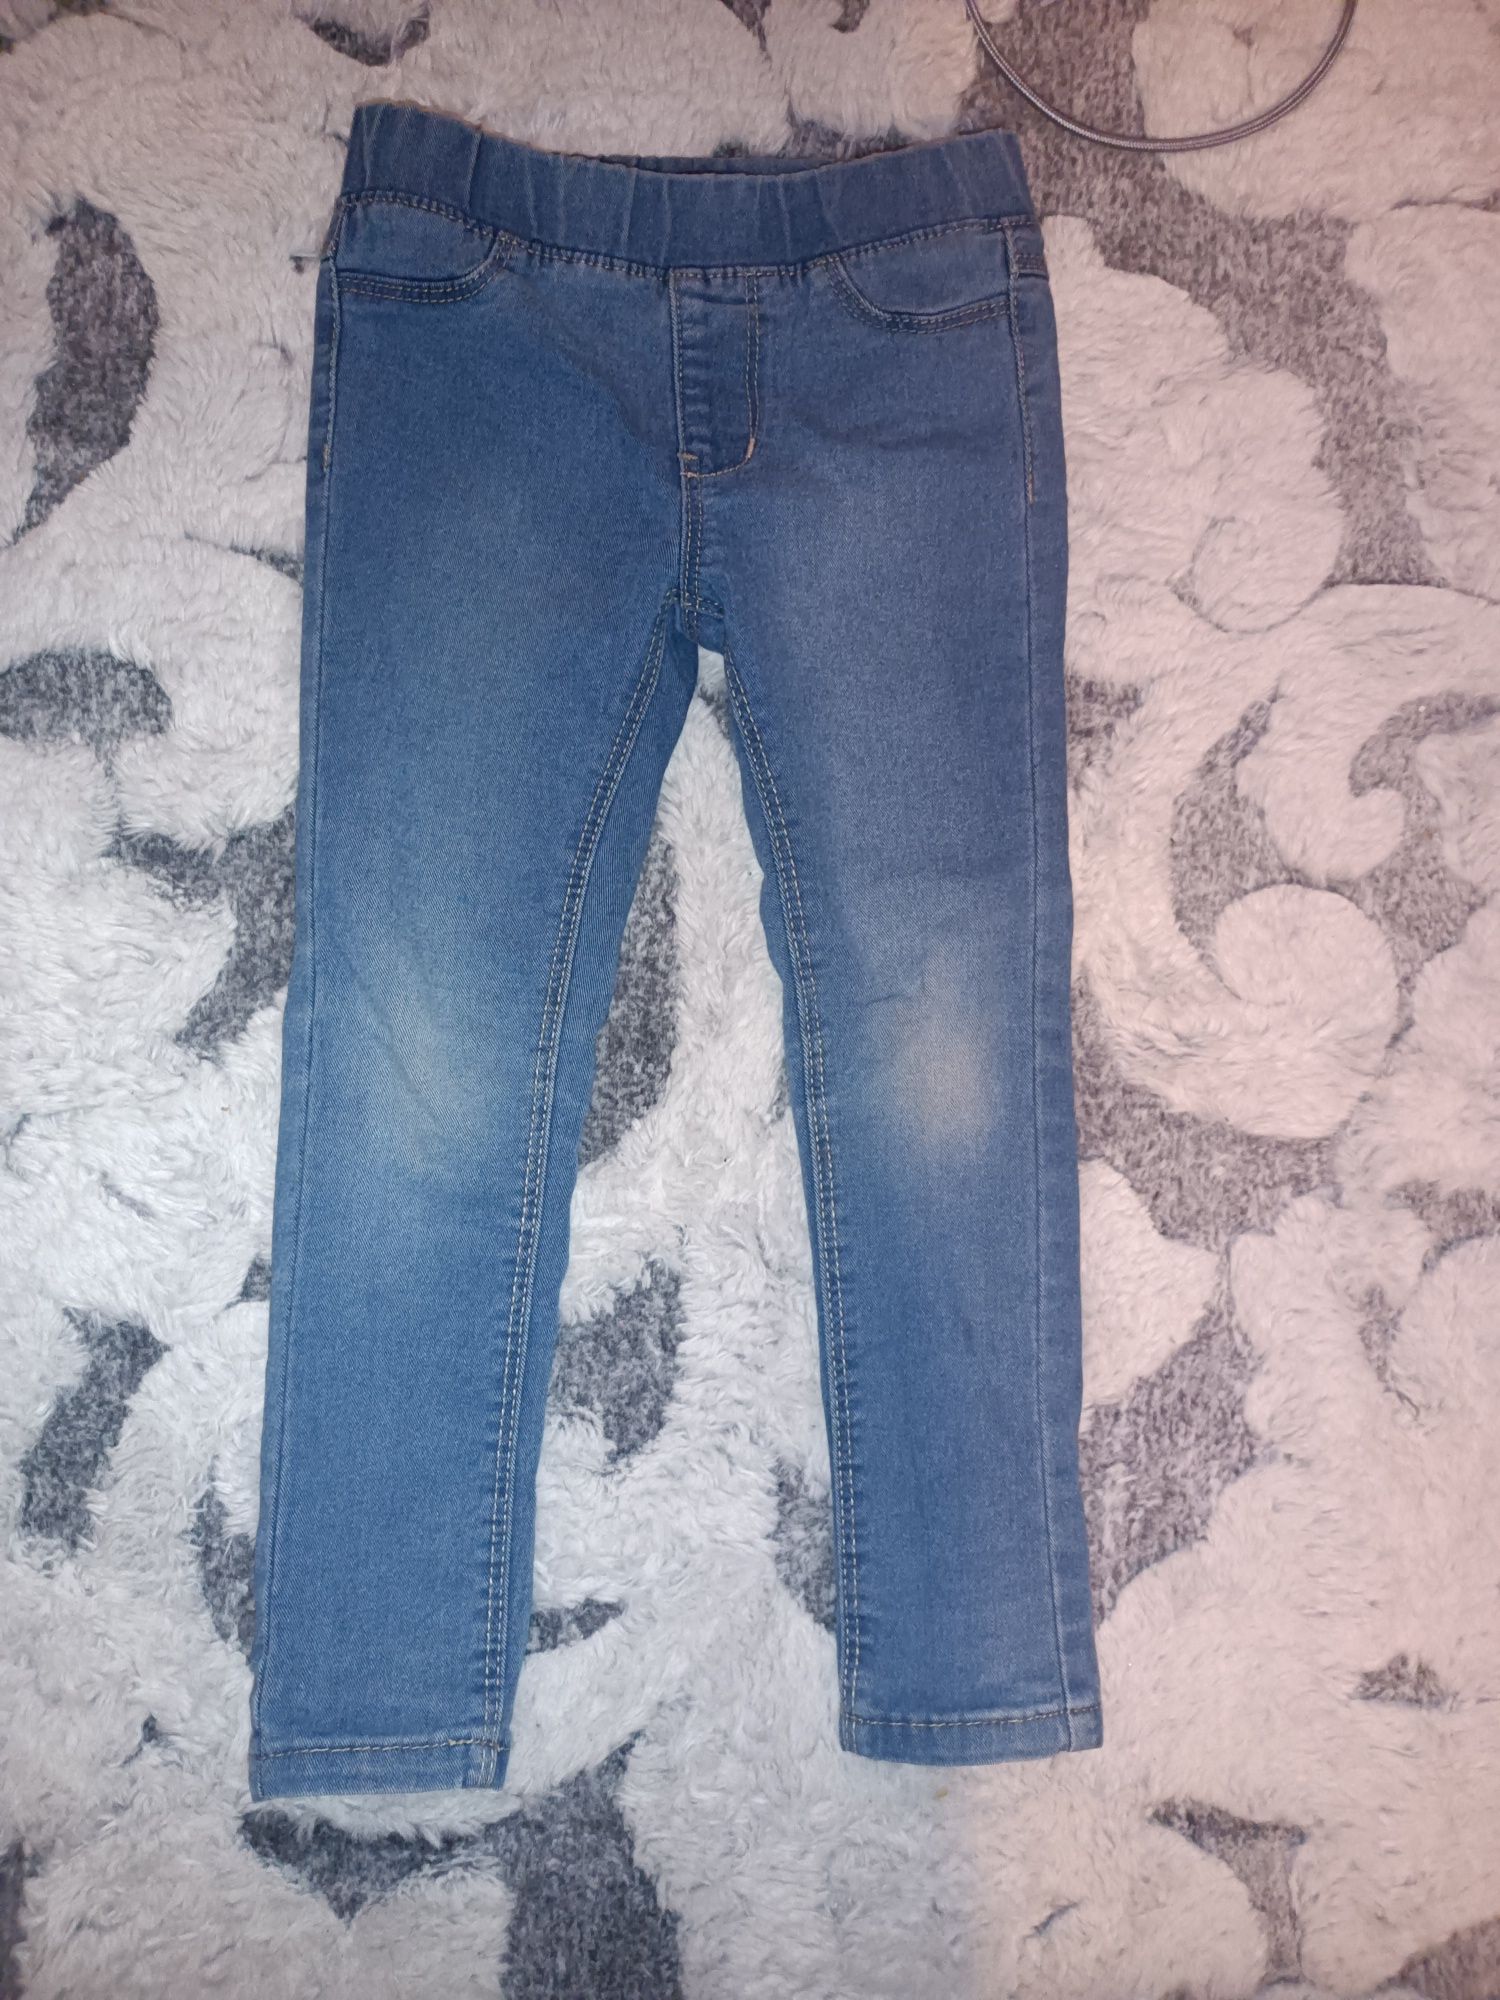 Treginsy jeansy miękkie 98/104